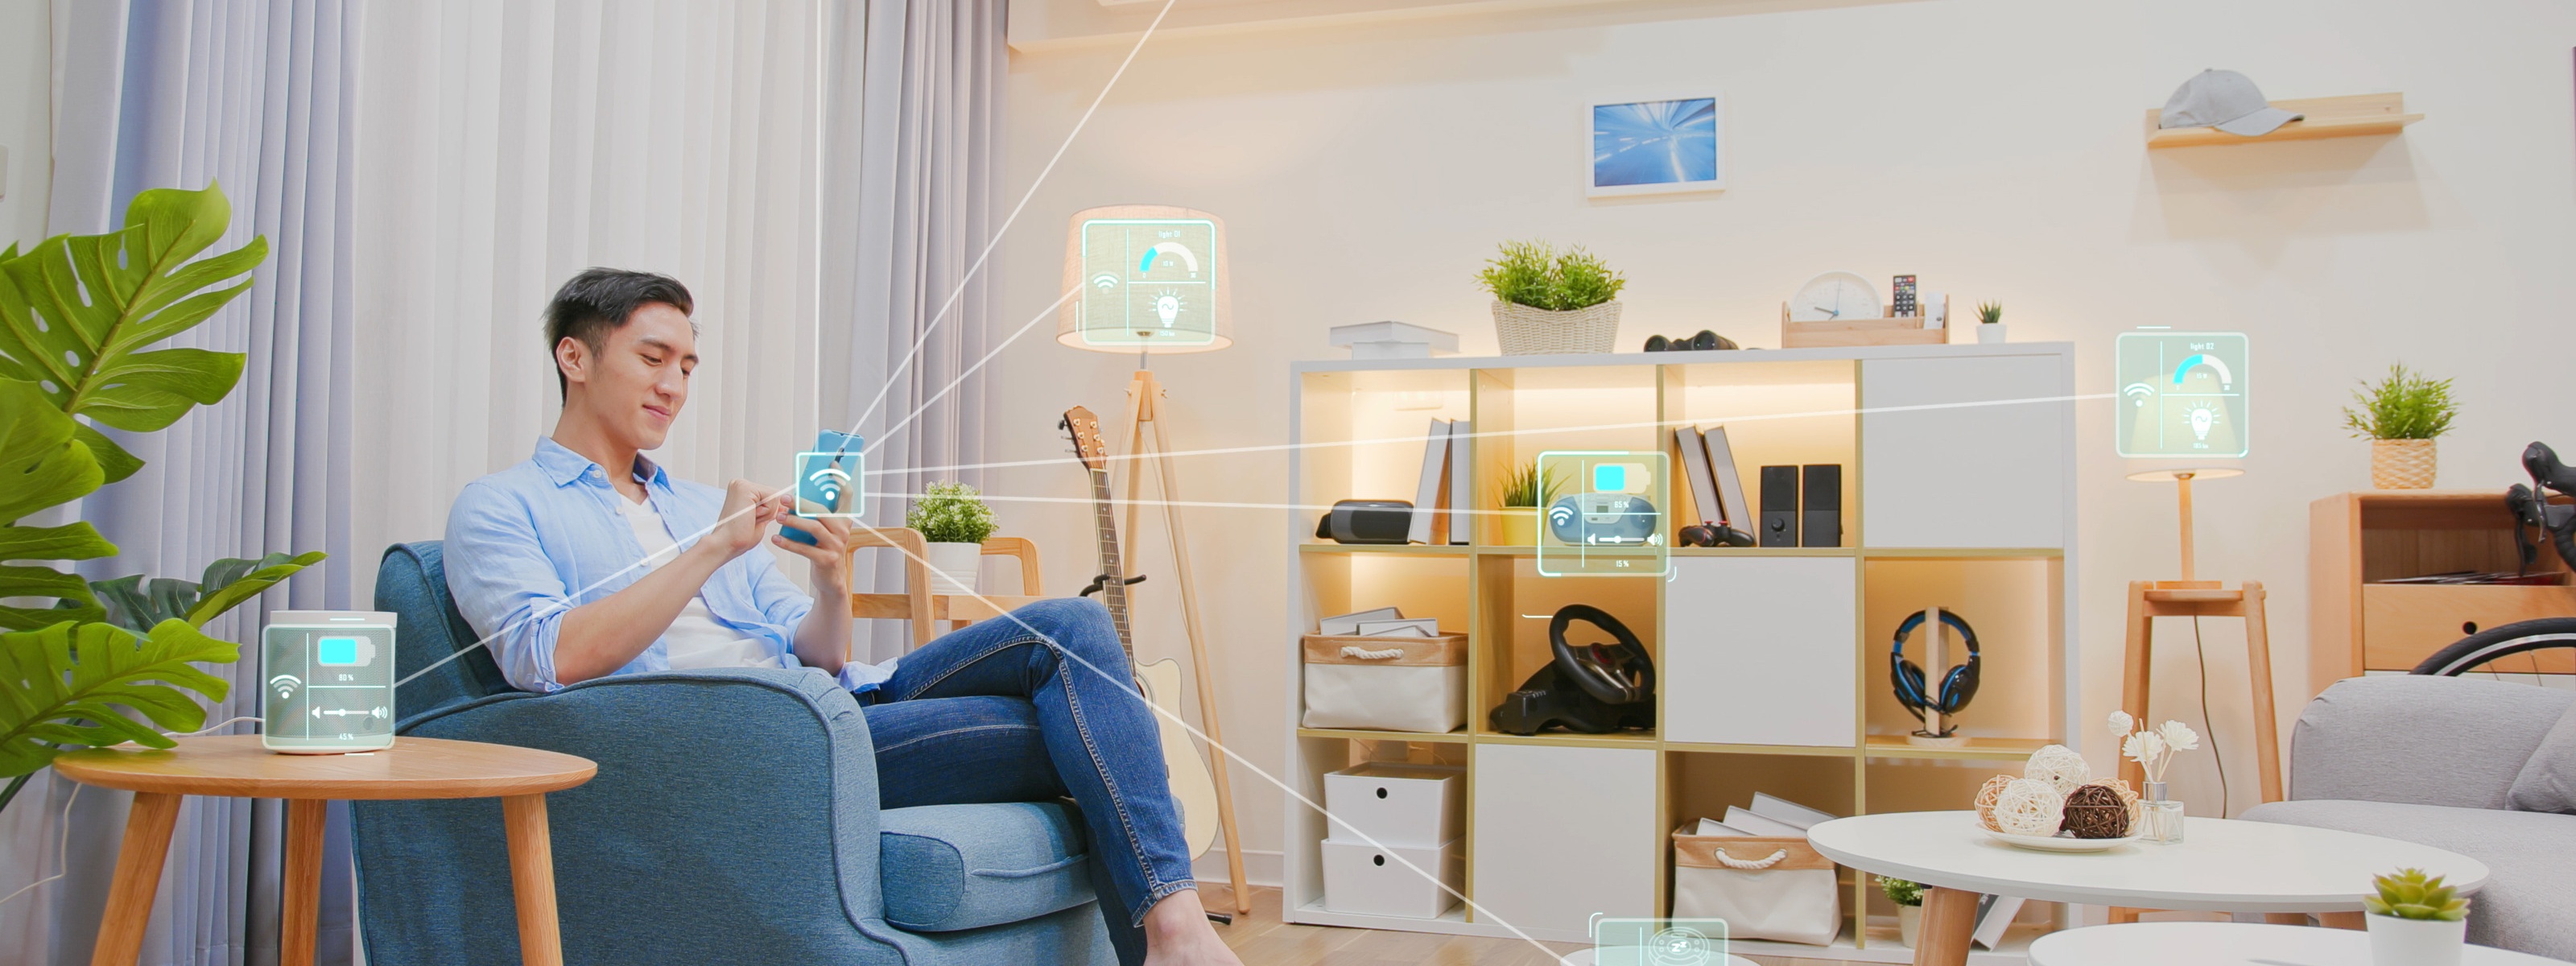 Person sitzt auf Couchsessel in Wohnzimmer und bedient Smartdevice, von dem leuchtende Linien zu Icons zum Thema Smarthome führen